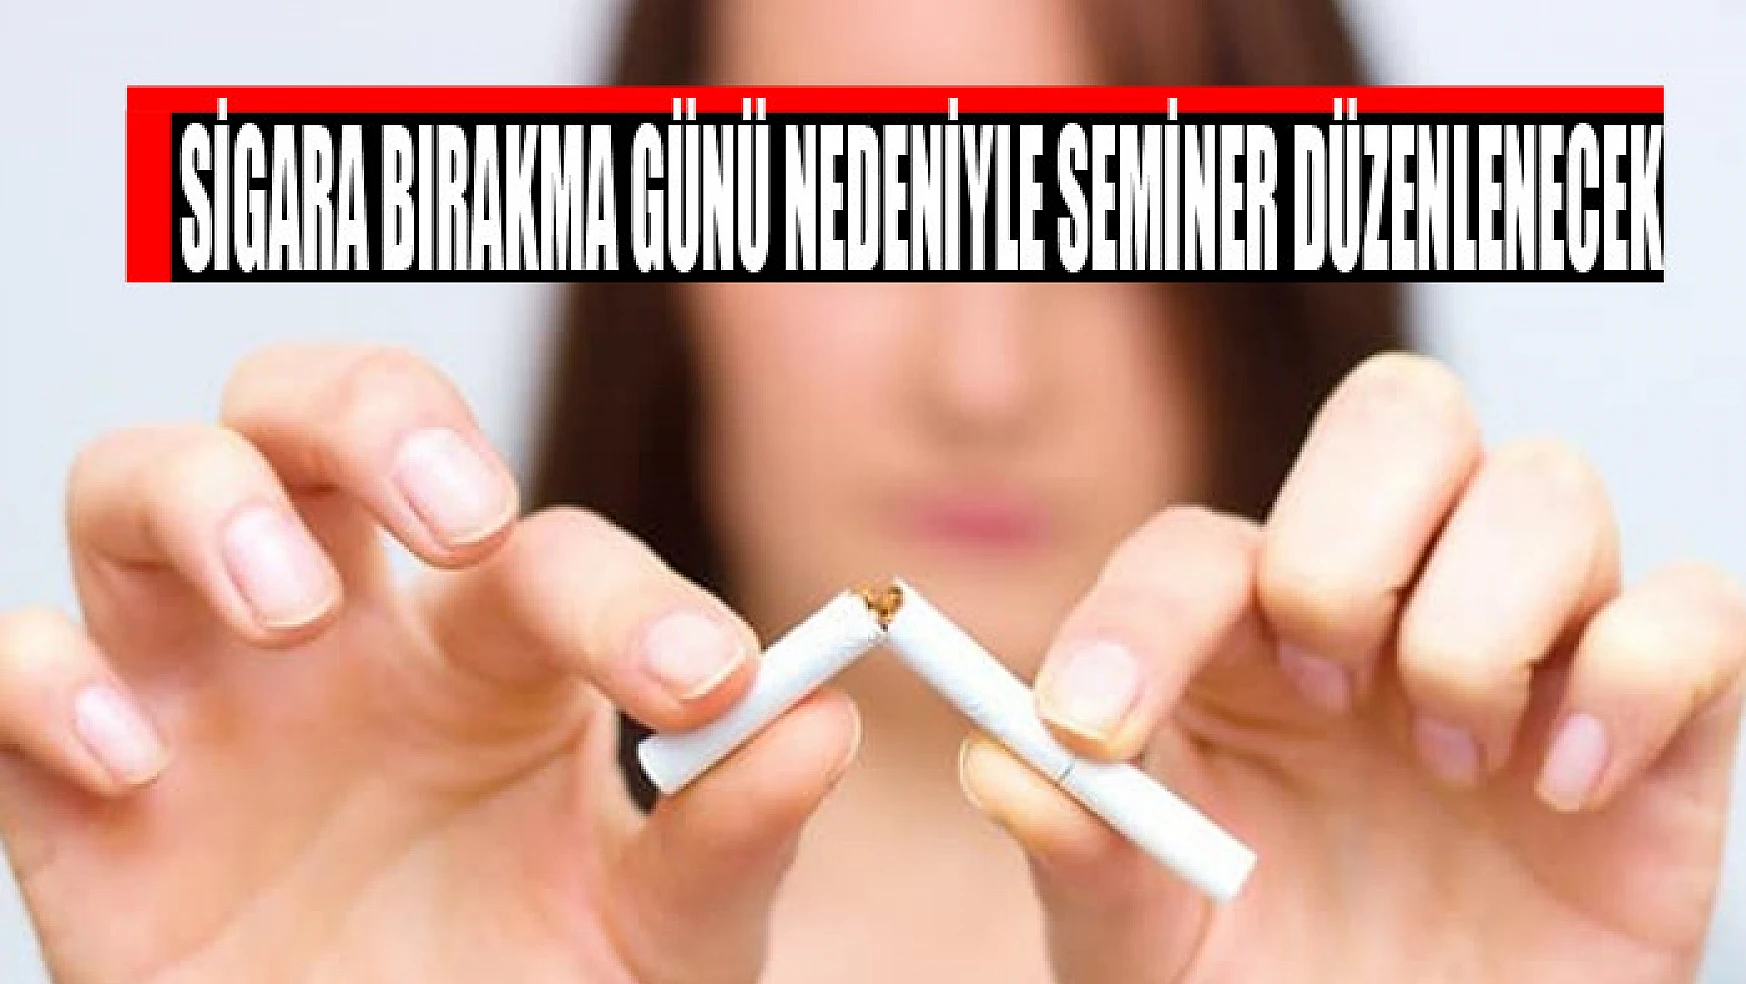 Sigara Bırakma Günü nedeniyle seminer düzenlenecek